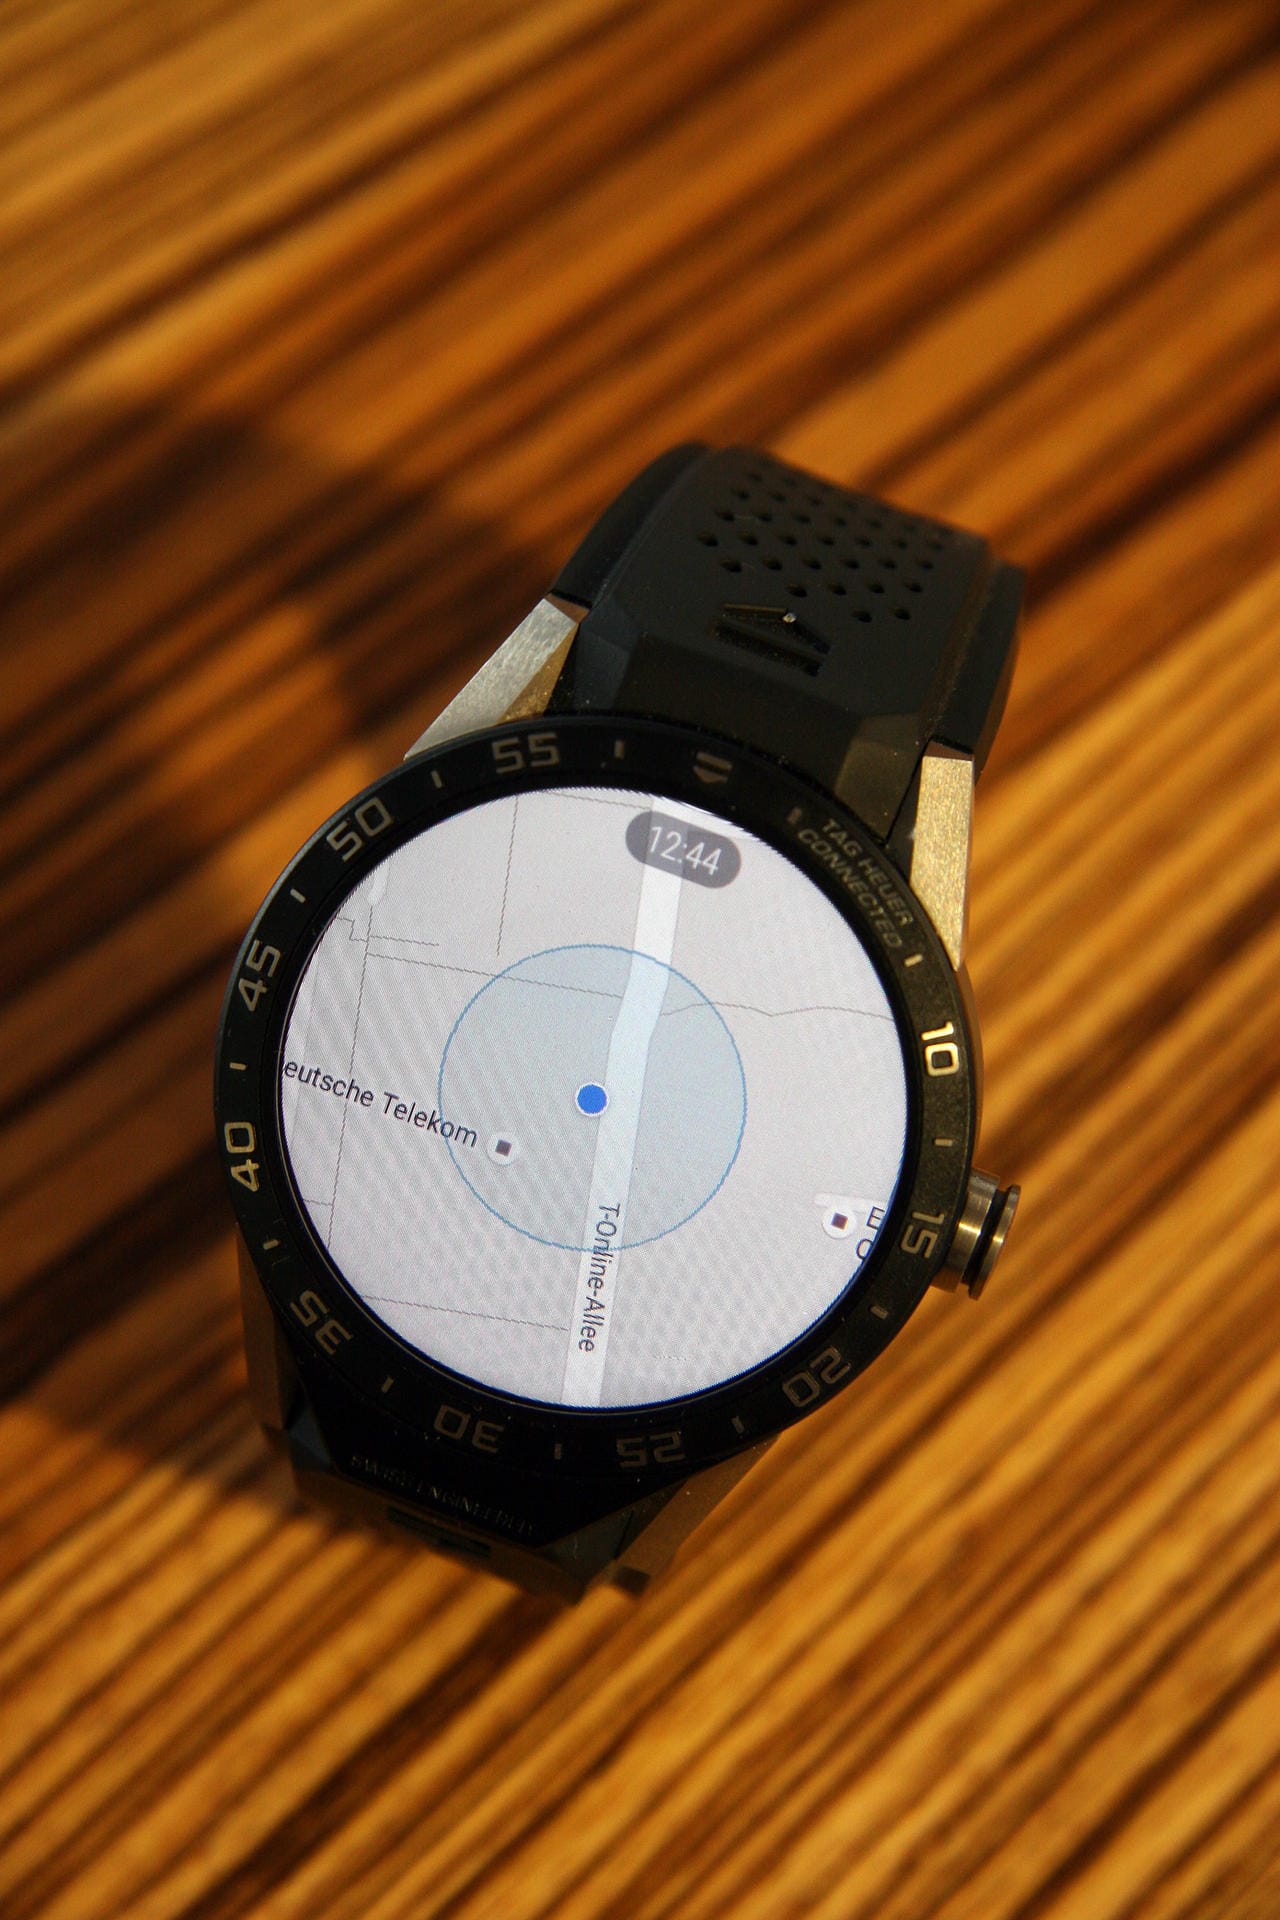 Für die Uhr mit dem Betriebssystem Android Wear gibt es zahlreiche Apps. Hier wird in der App Google Maps der Standort angezeigt.